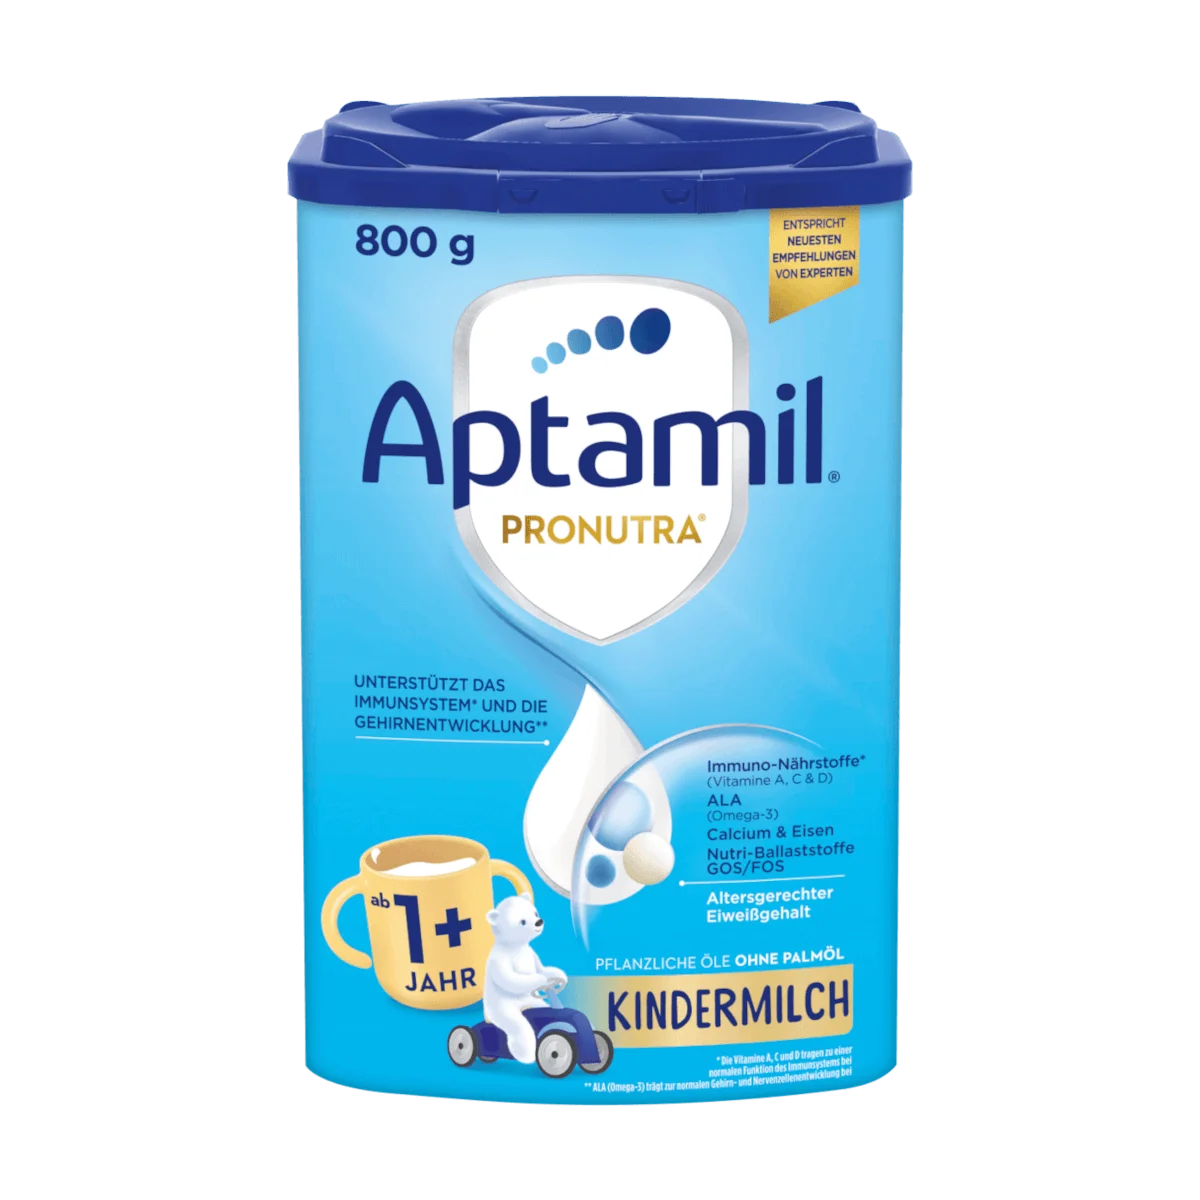 Aptamil Pronutra 1+ Kindermilch ab 1 Jahr, 800 g